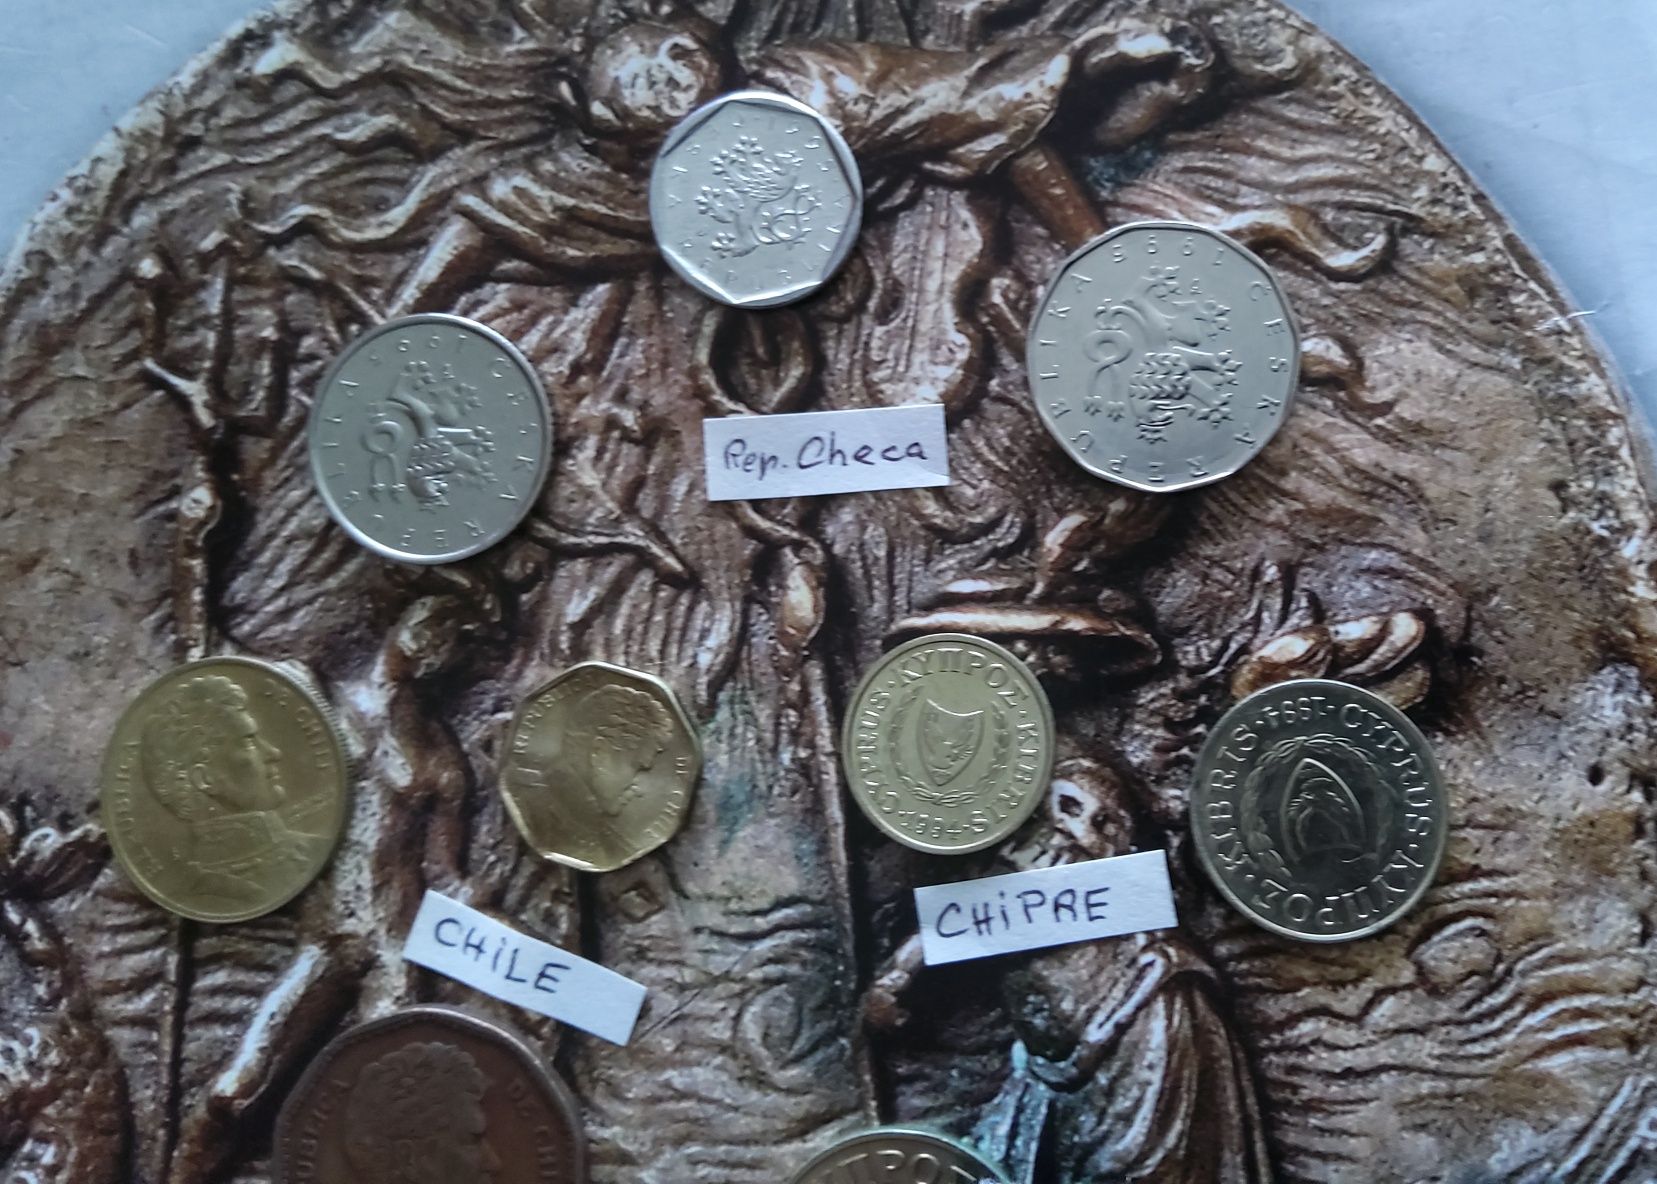 14524#Lote 9 moedas estrangeiras diferentes algumas unc
3 Chipre